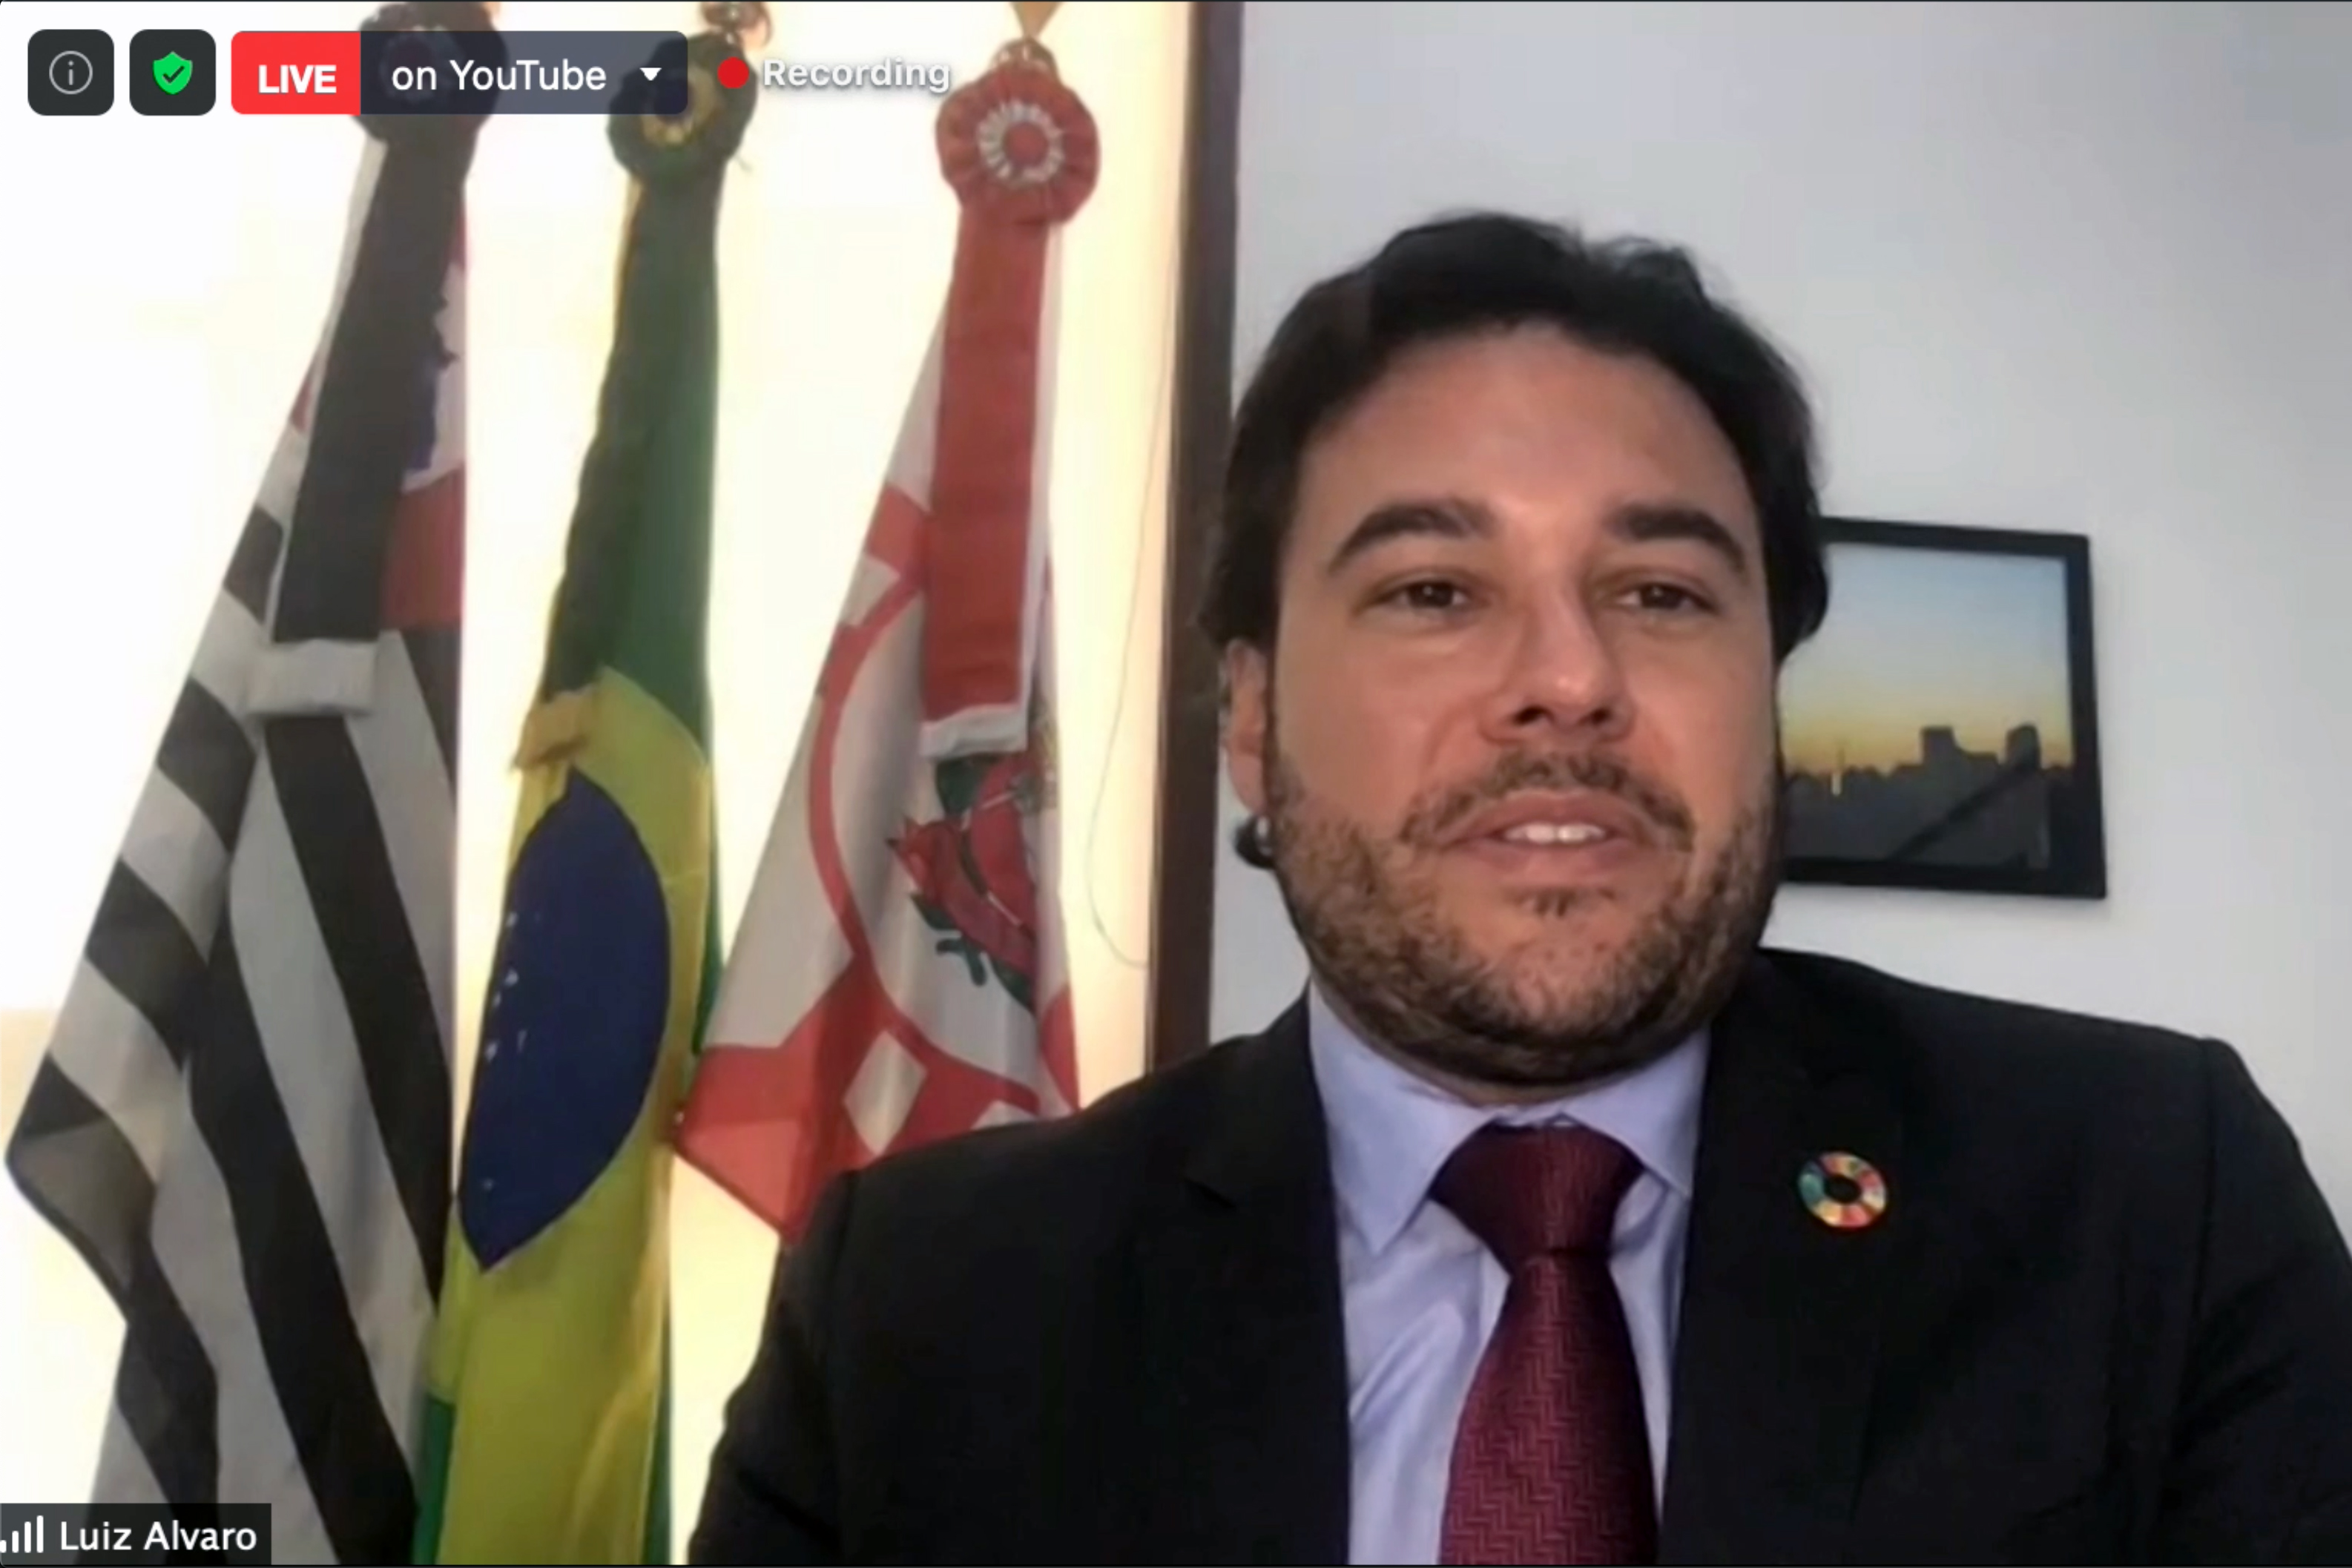 Luiz Alvaro Salles, Secretary of International Affairs, City of São Paulo, Brazil